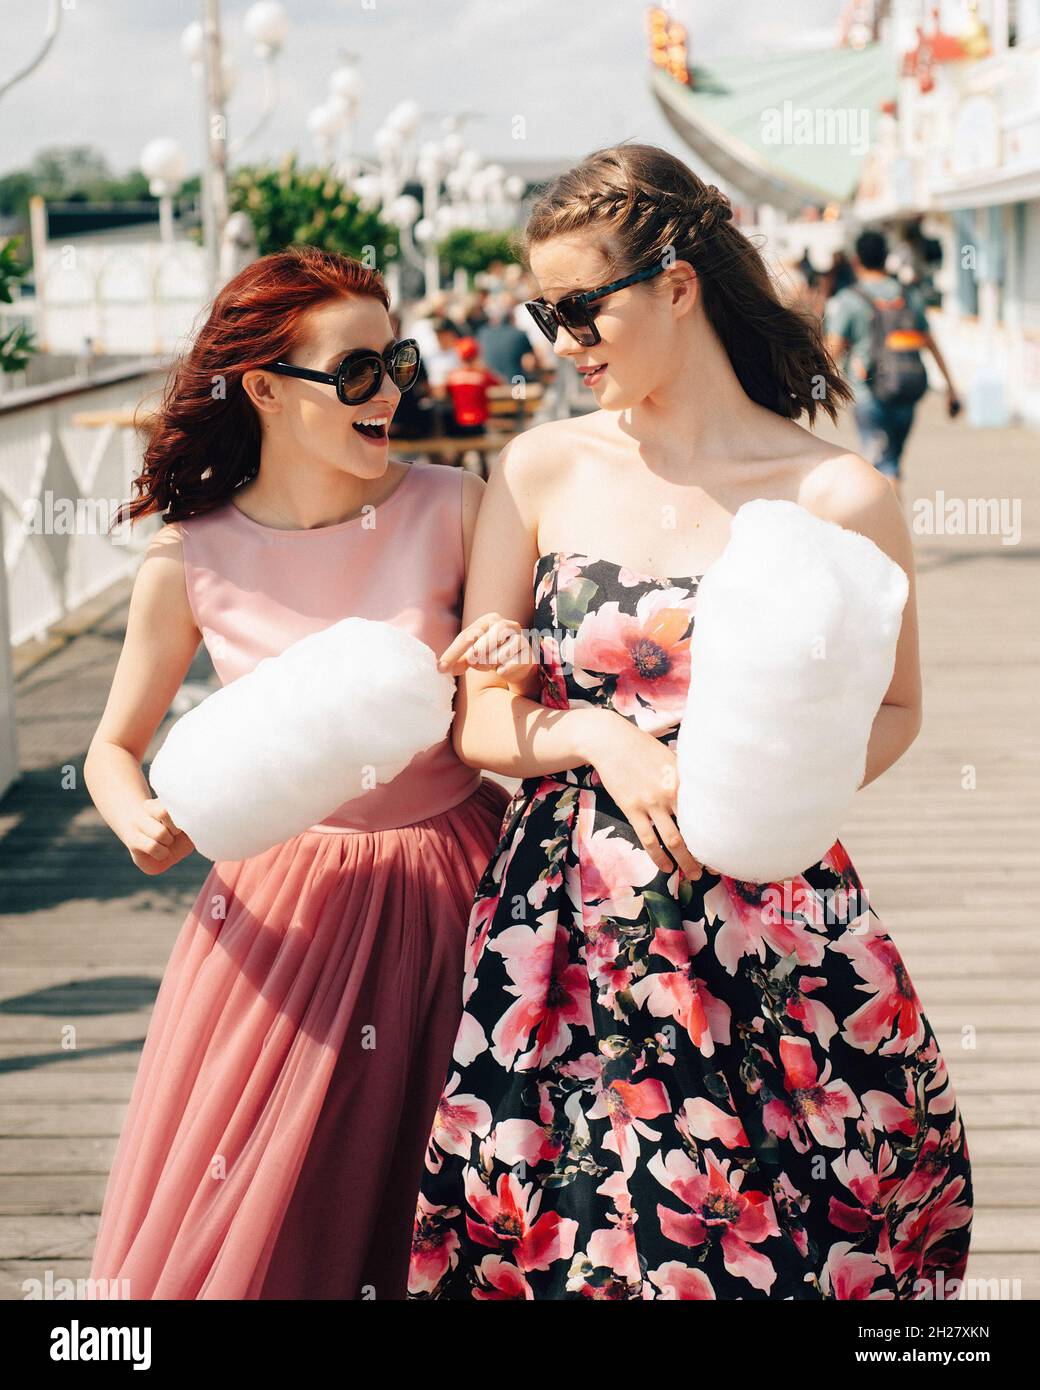 Nahaufnahme Porträt von lächelnden aufgeregt Mädchen mit Sonnenbrillen und  Abschlussball Kleider halten Zuckerwatte im Vergnügungspark. Jugendliche in  rosa Abendkleider Stockfotografie - Alamy